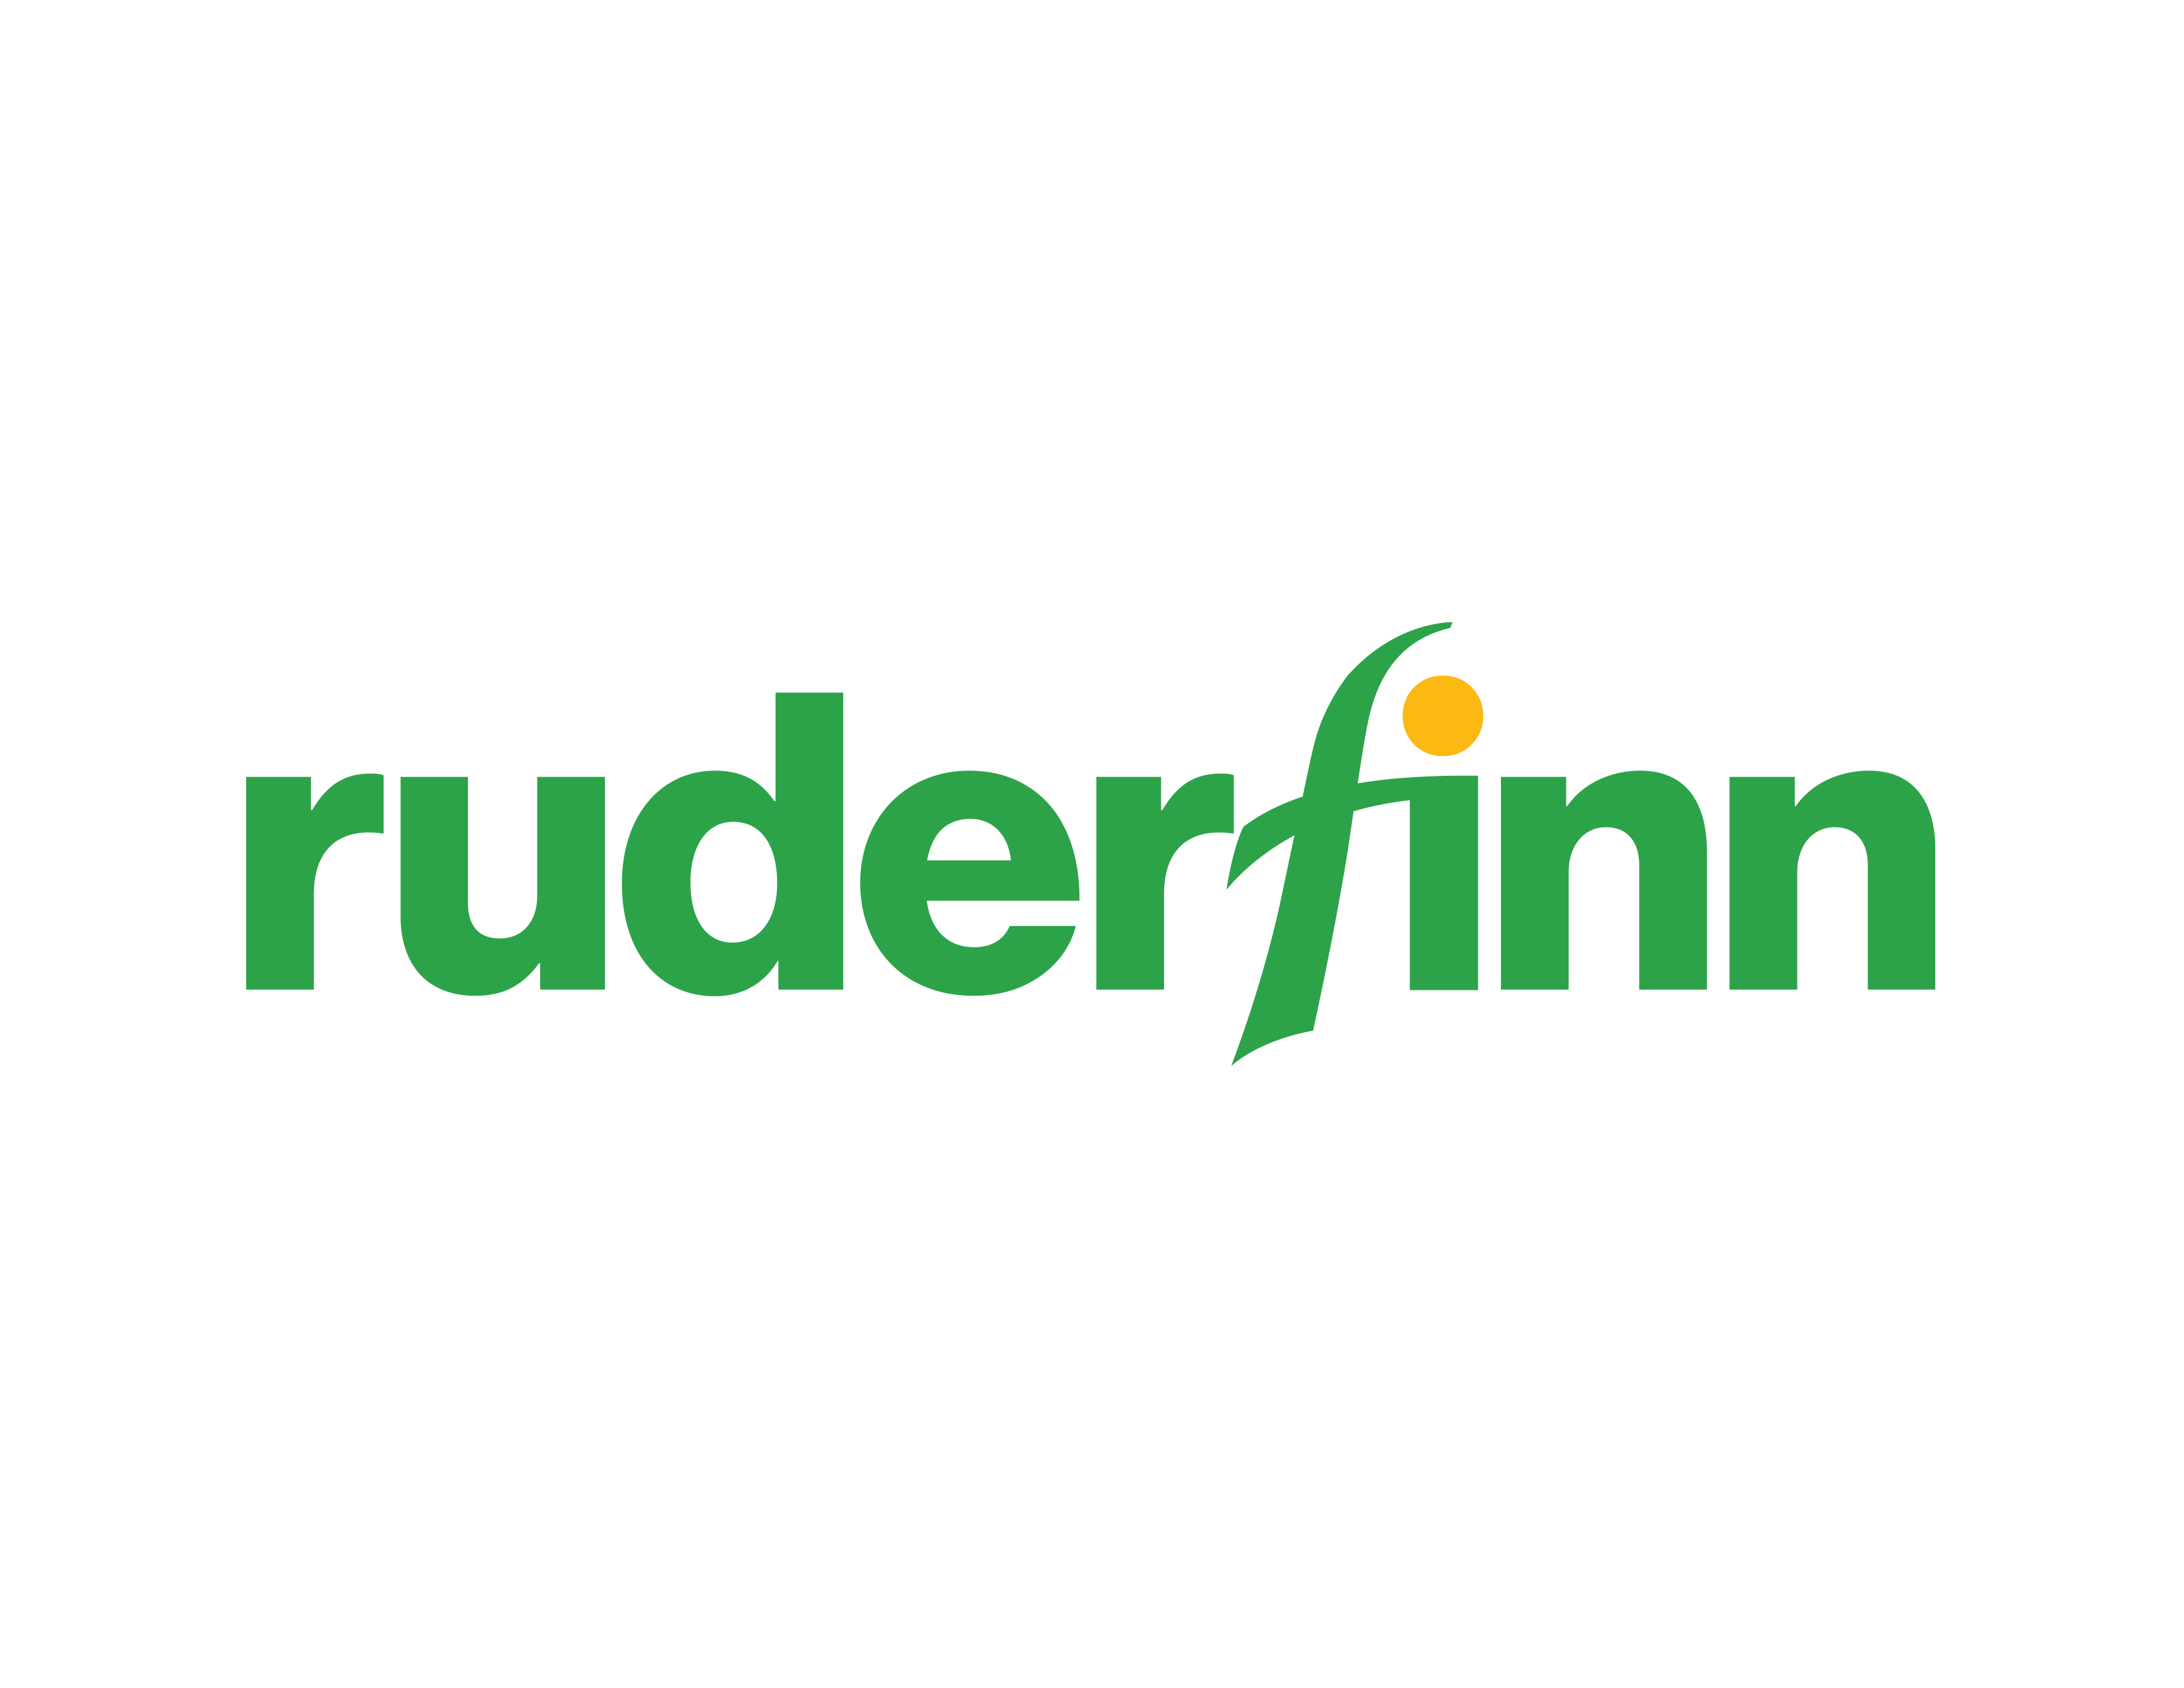 LE004 Ruder Finn Inc logo